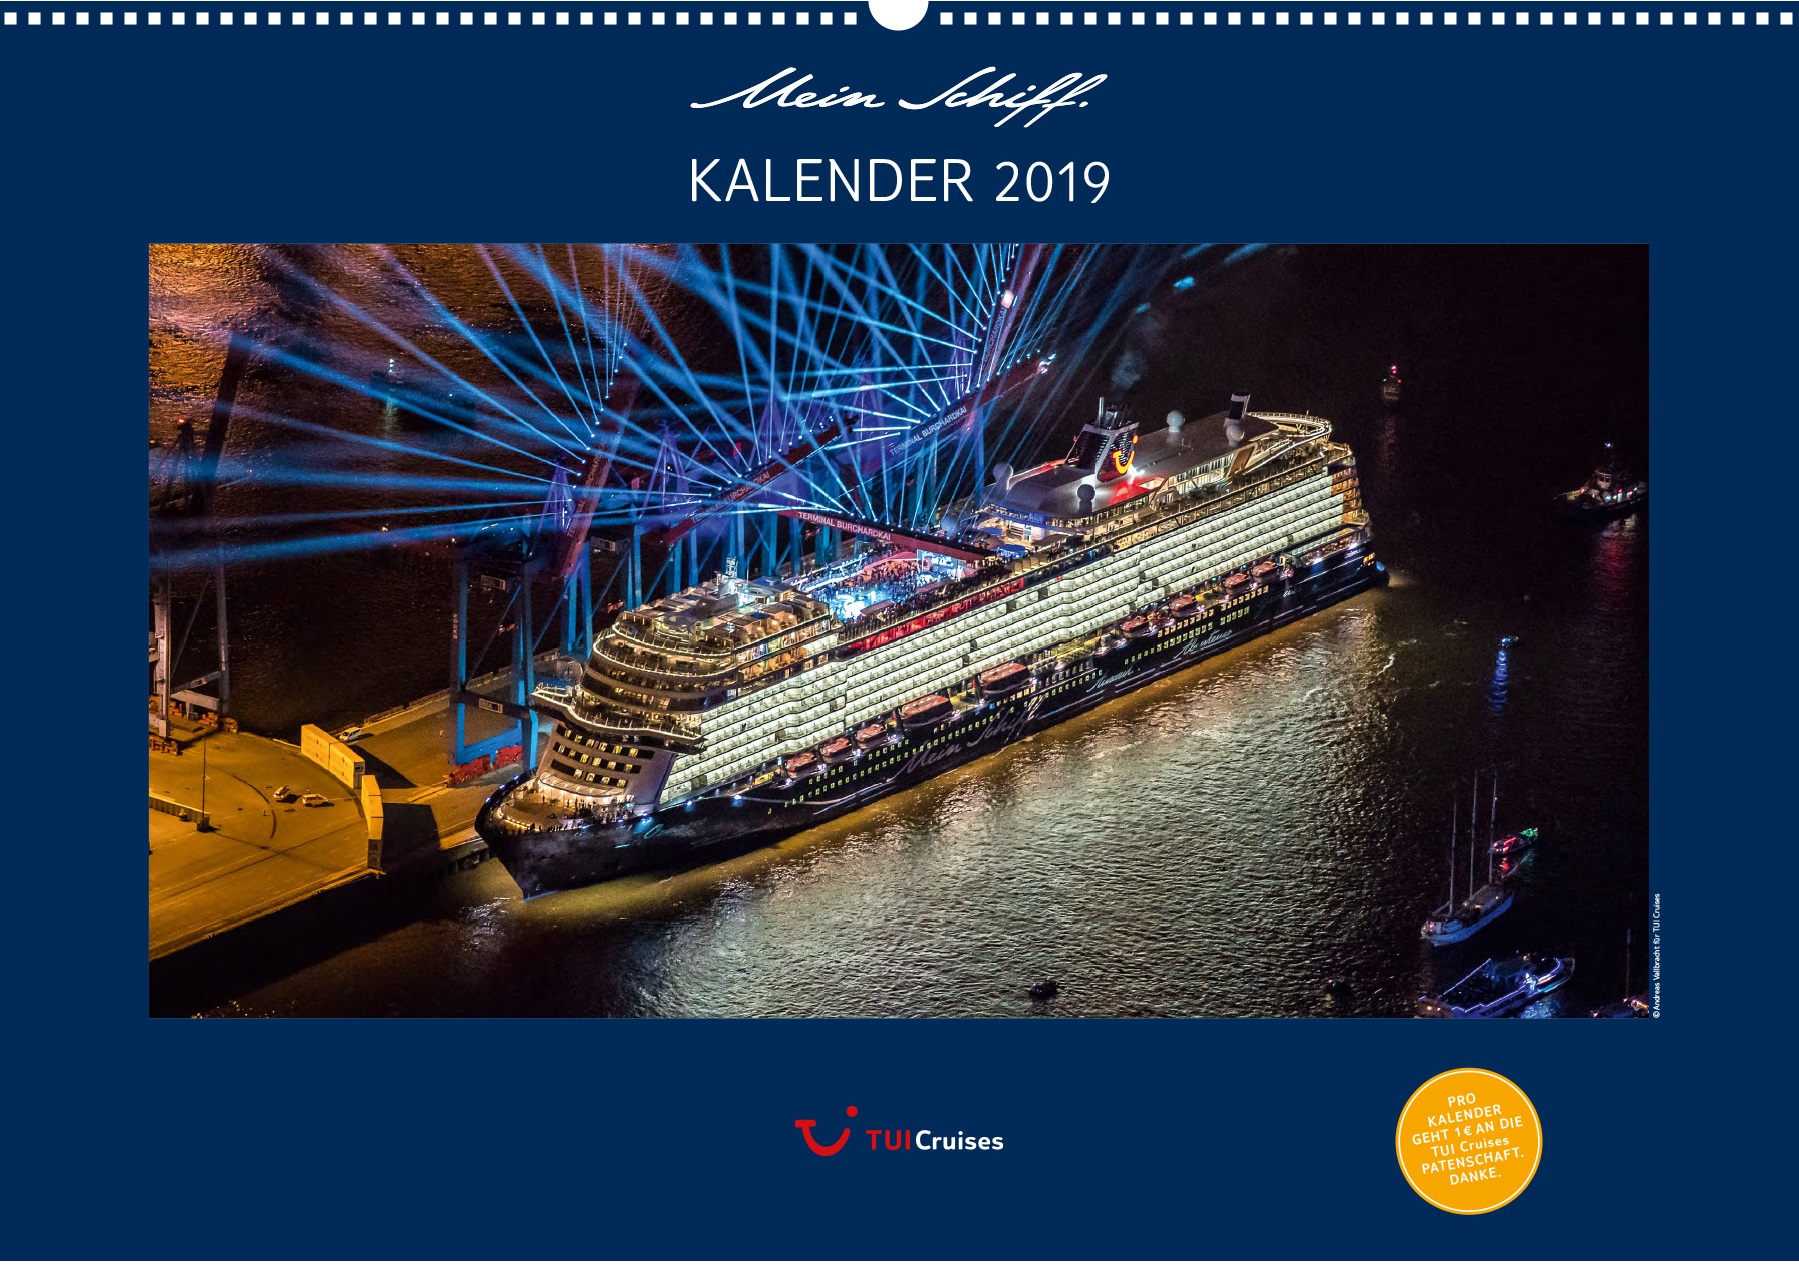 Das Titelbild des Mein Schiff Kalenders 2019 von TUI Cruises